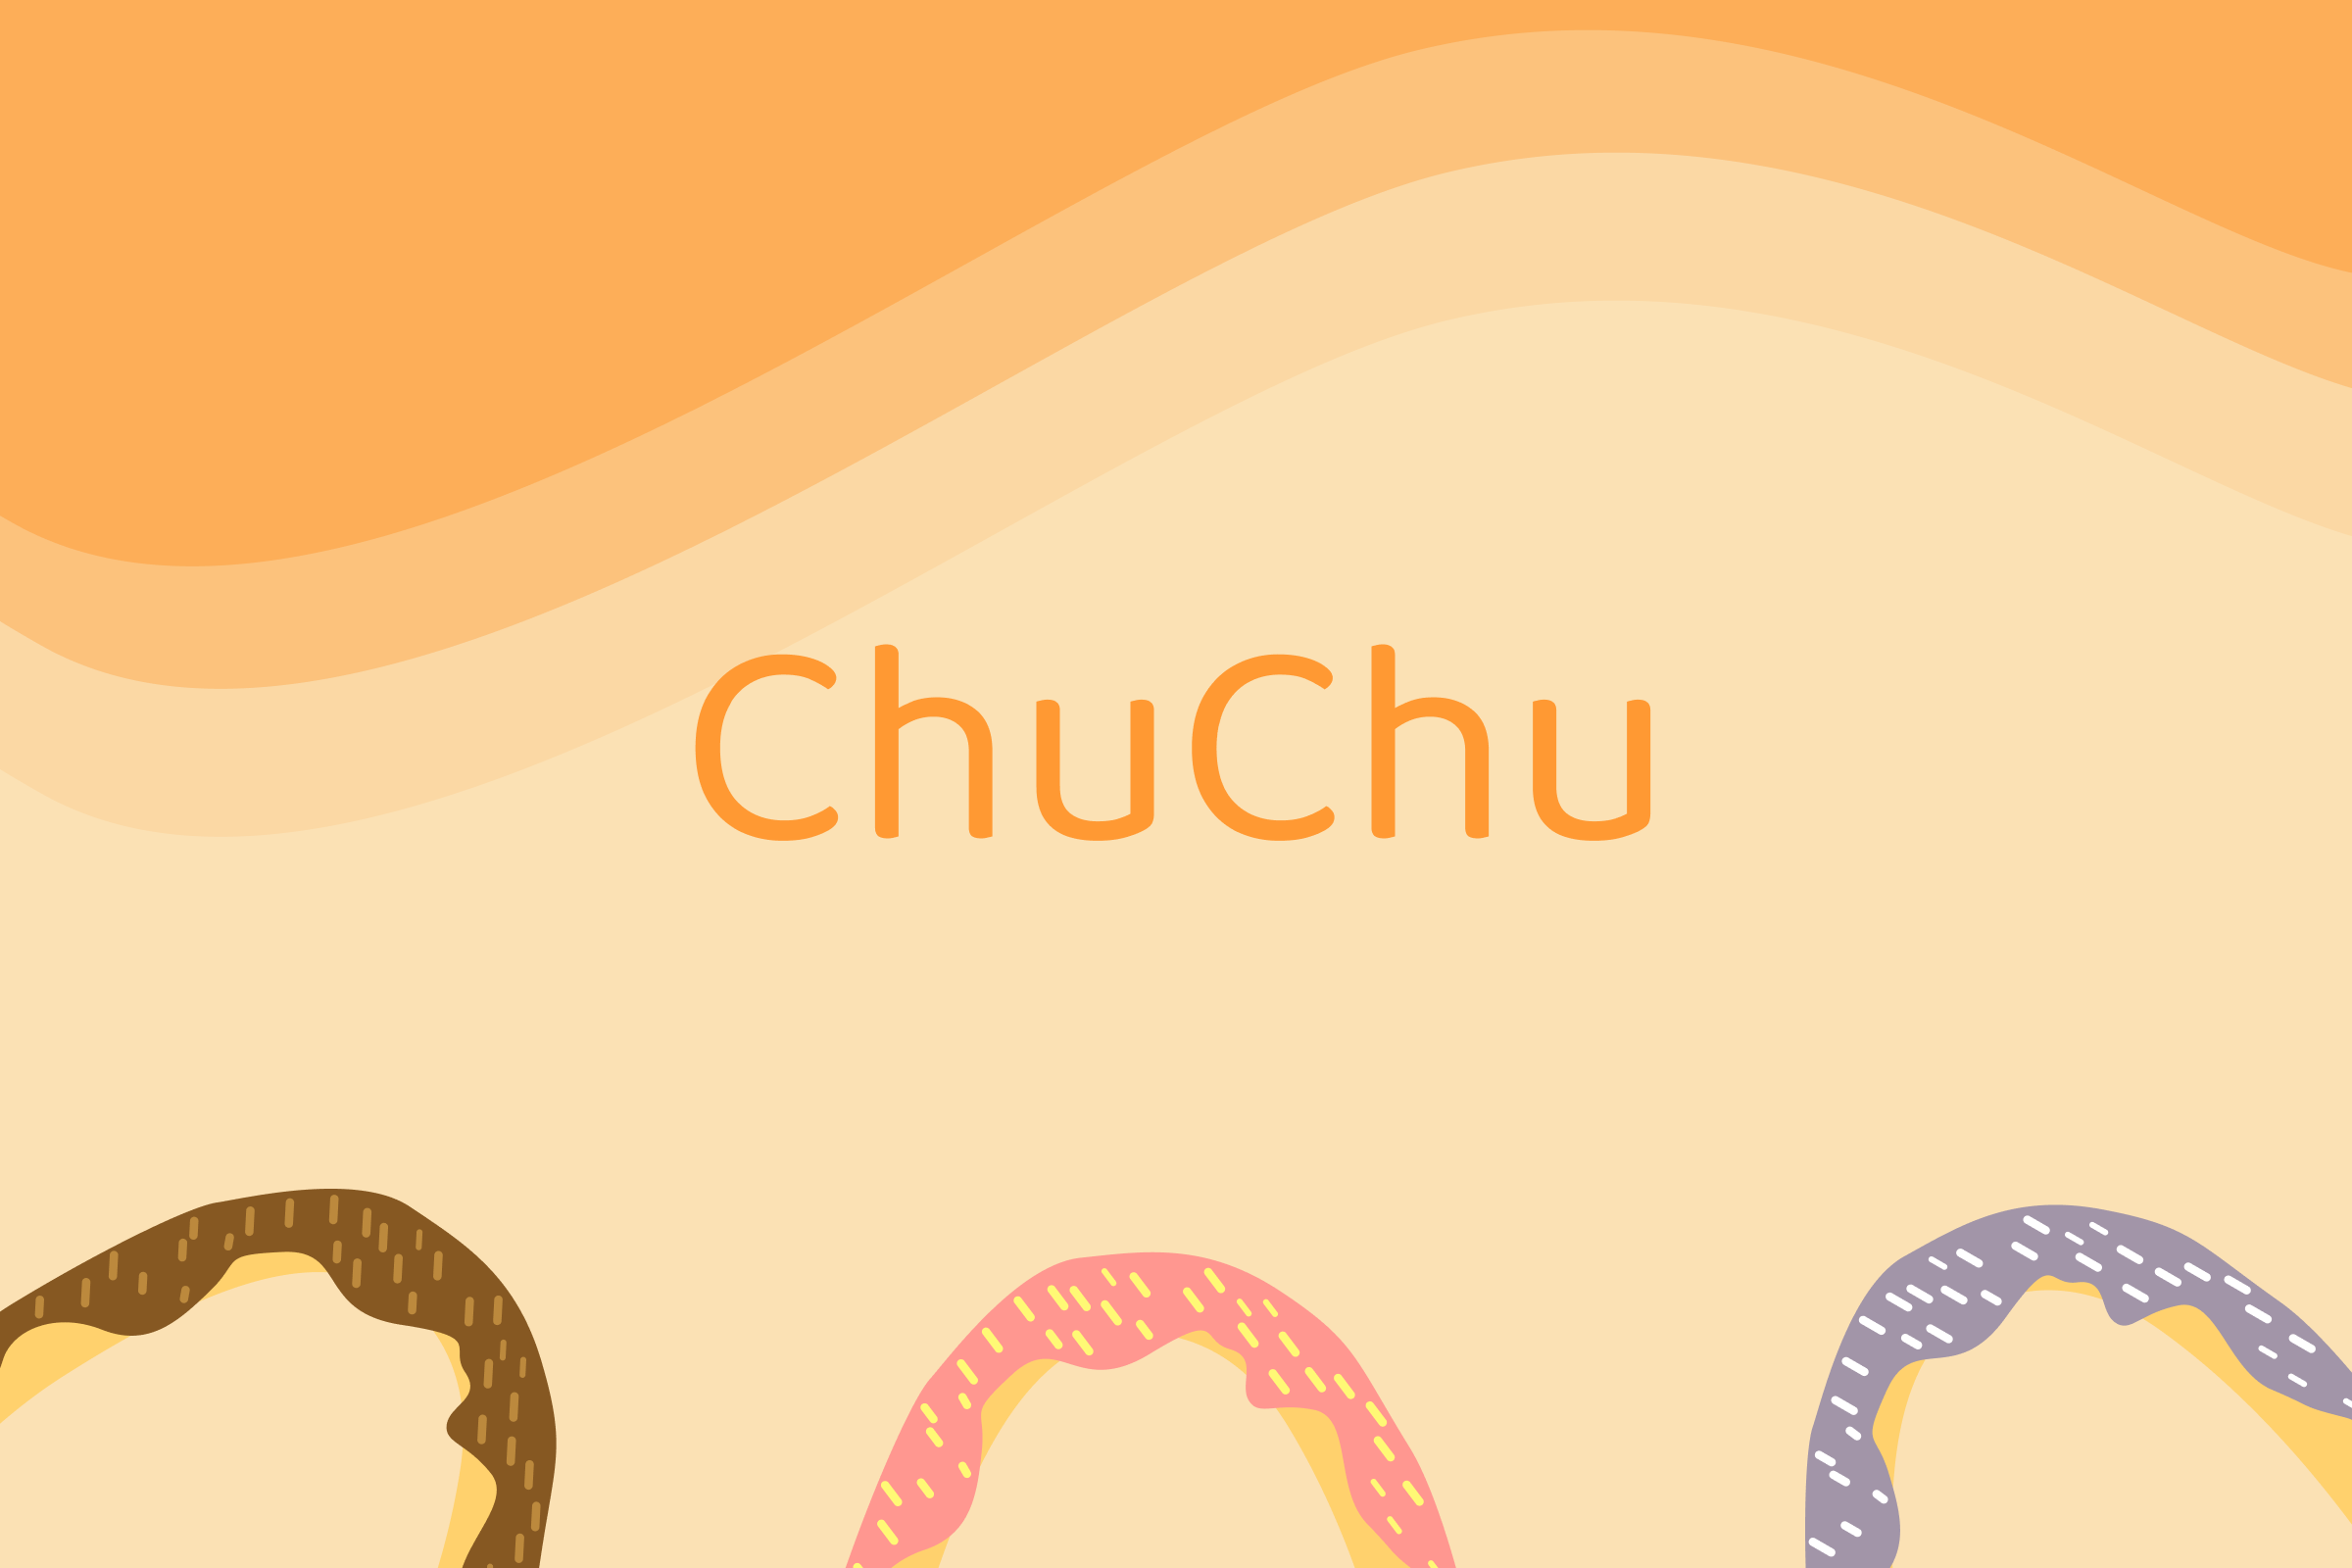 chuchu project title image